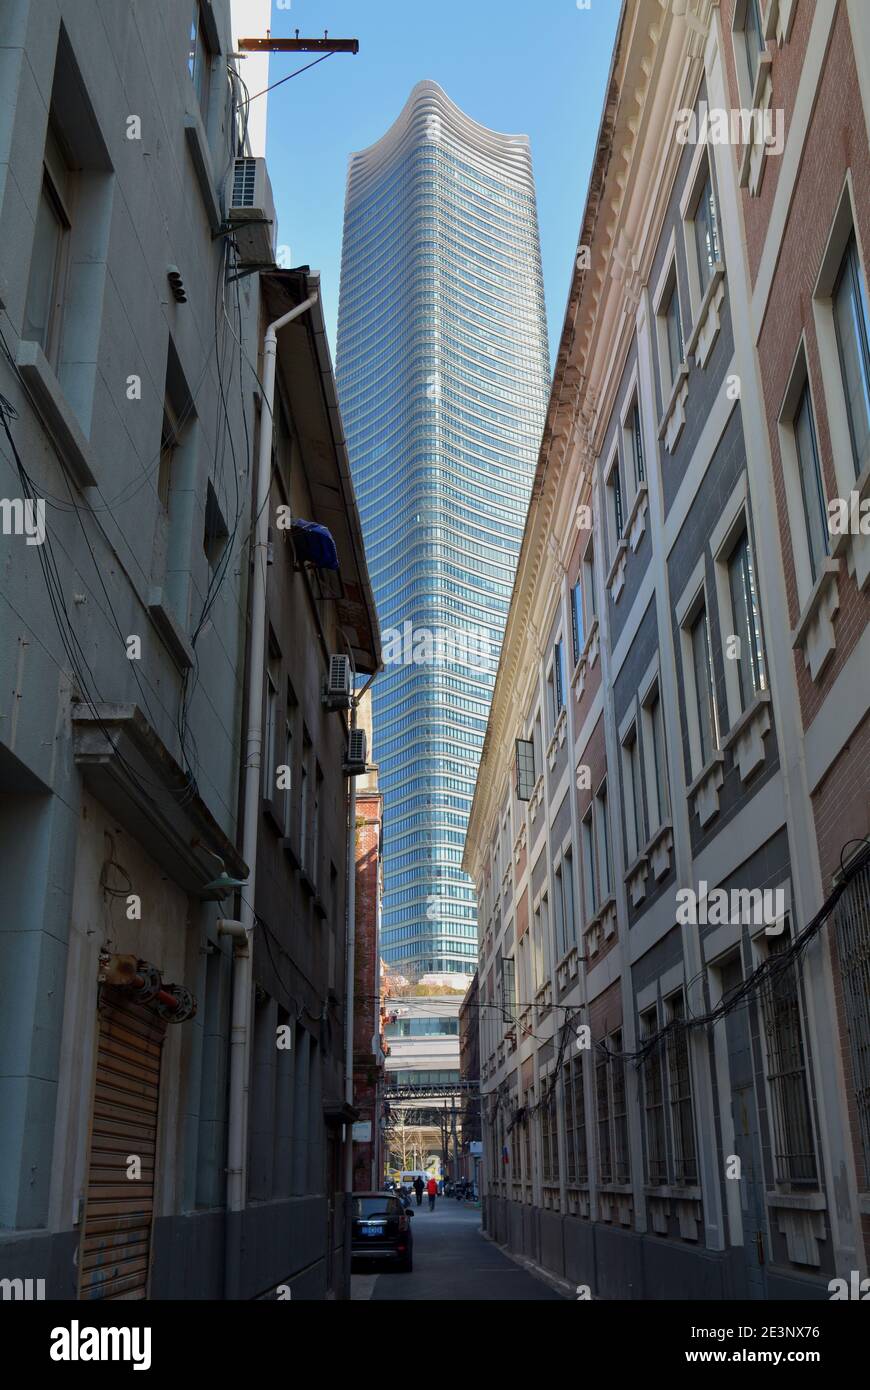 Shanghai Wolkenkratzer von den Straßen aus gesehen, scheint es viel dominanter erscheinen zu lassen. Stockfoto